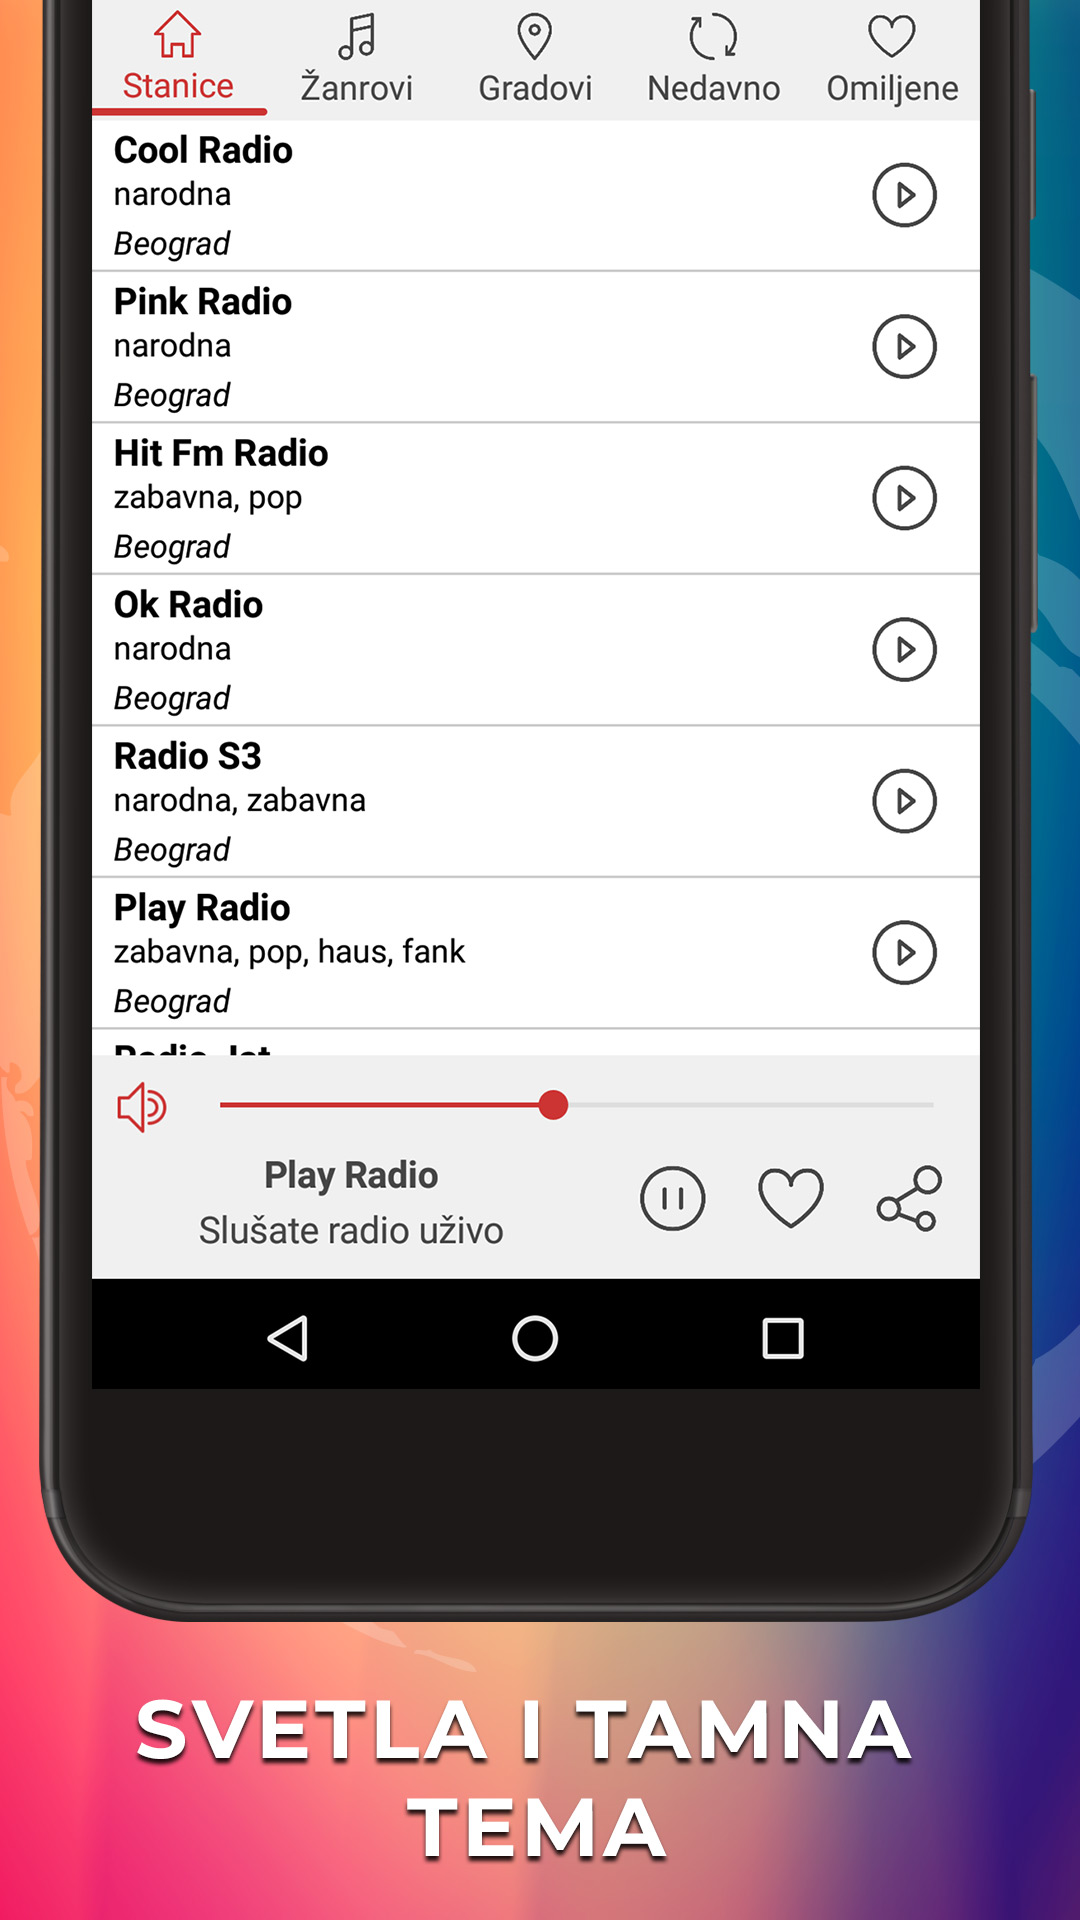 Radio Uzivo Srbija - Radio Stanice Srbije APK 1.3.6 für Android  herunterladen – Die neueste Verion von Radio Uzivo Srbija - Radio Stanice  Srbije APK herunterladen - APKFab.com